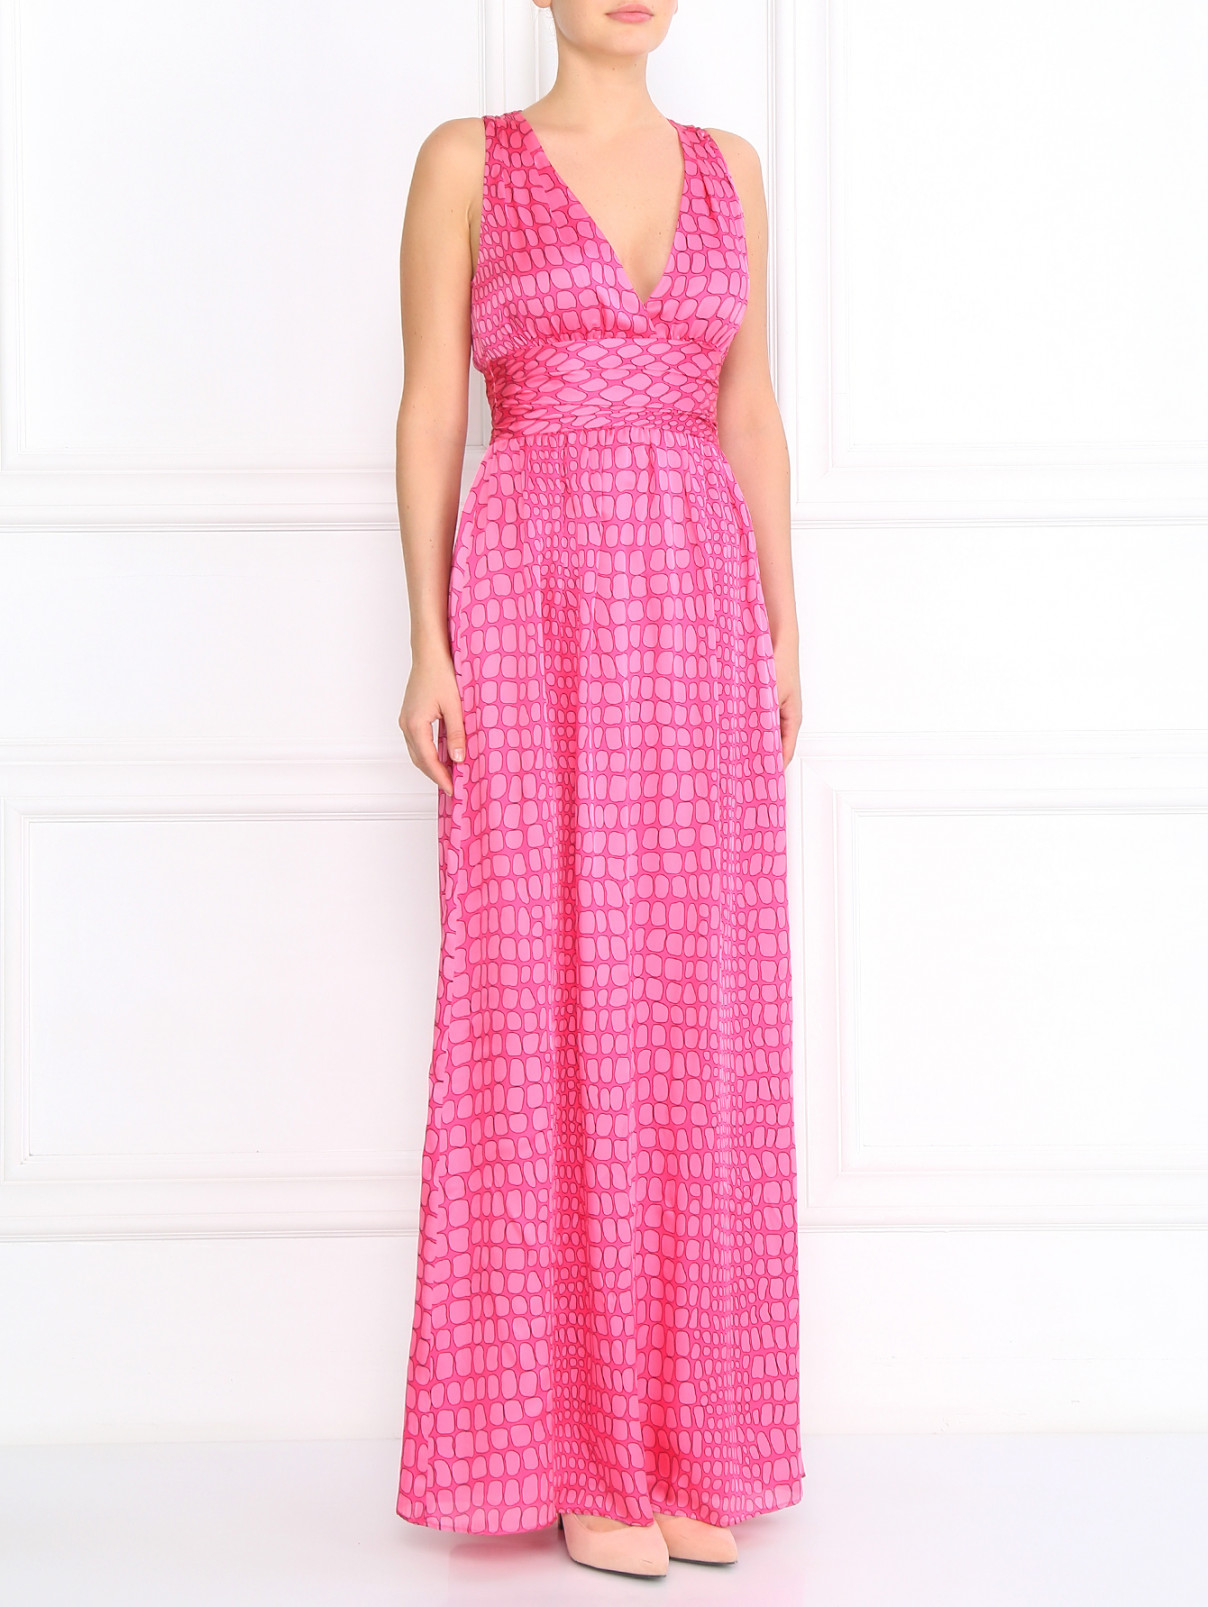 Платье-макси из шелка Moschino Cheap&Chic  –  Модель Общий вид  – Цвет:  Розовый